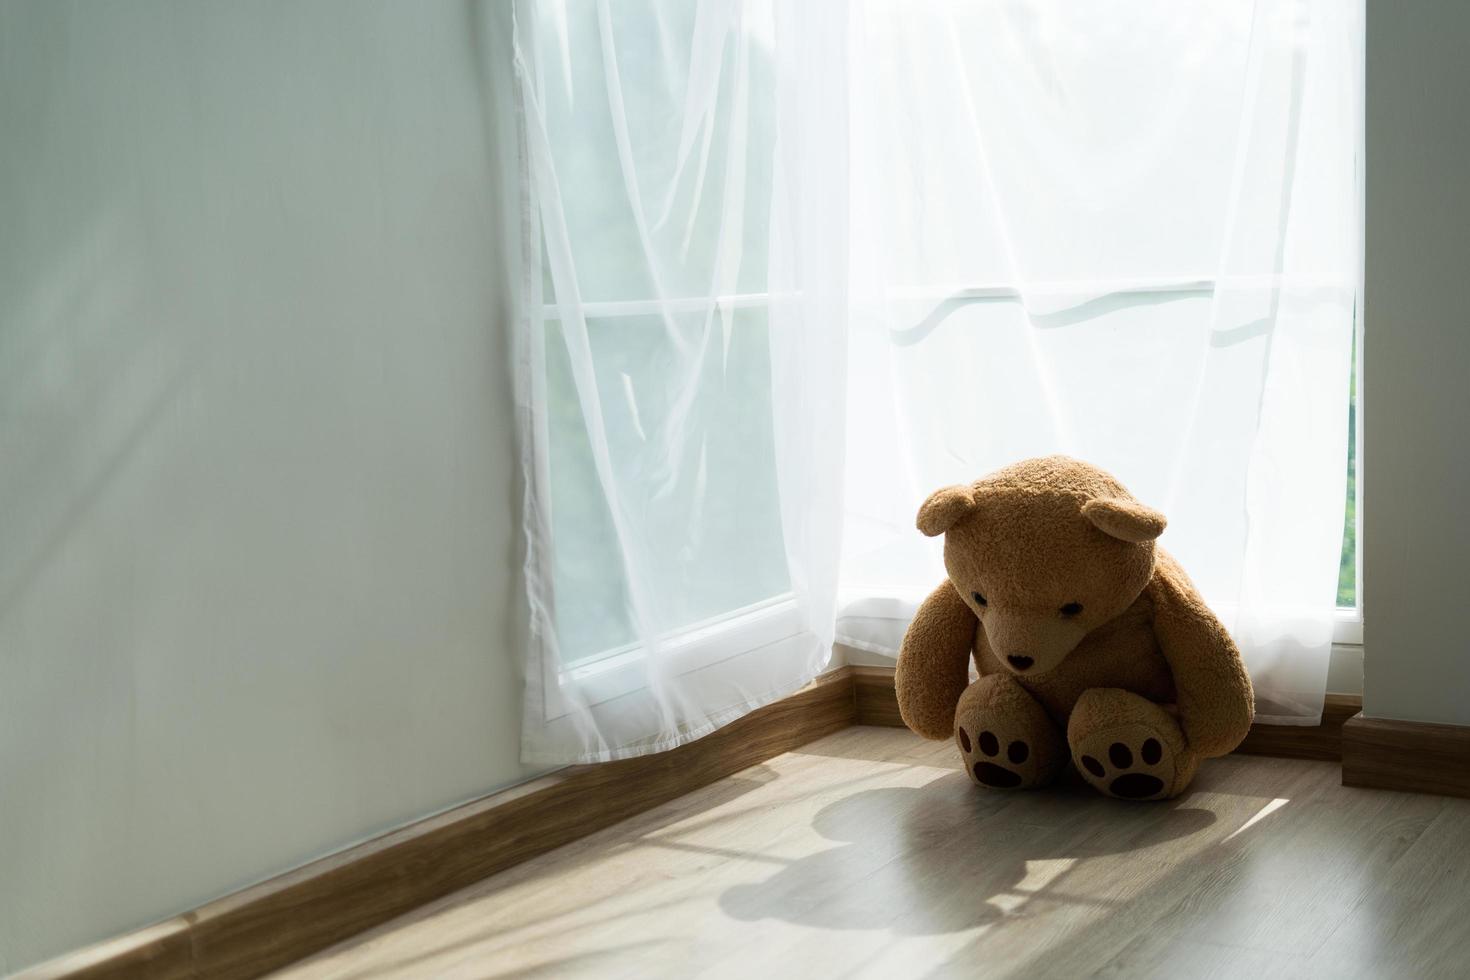 de brun teddy Björn var tyvärr och besvikelse. de teddy Björn känsla ensam. barn begrepp av sorg. foto